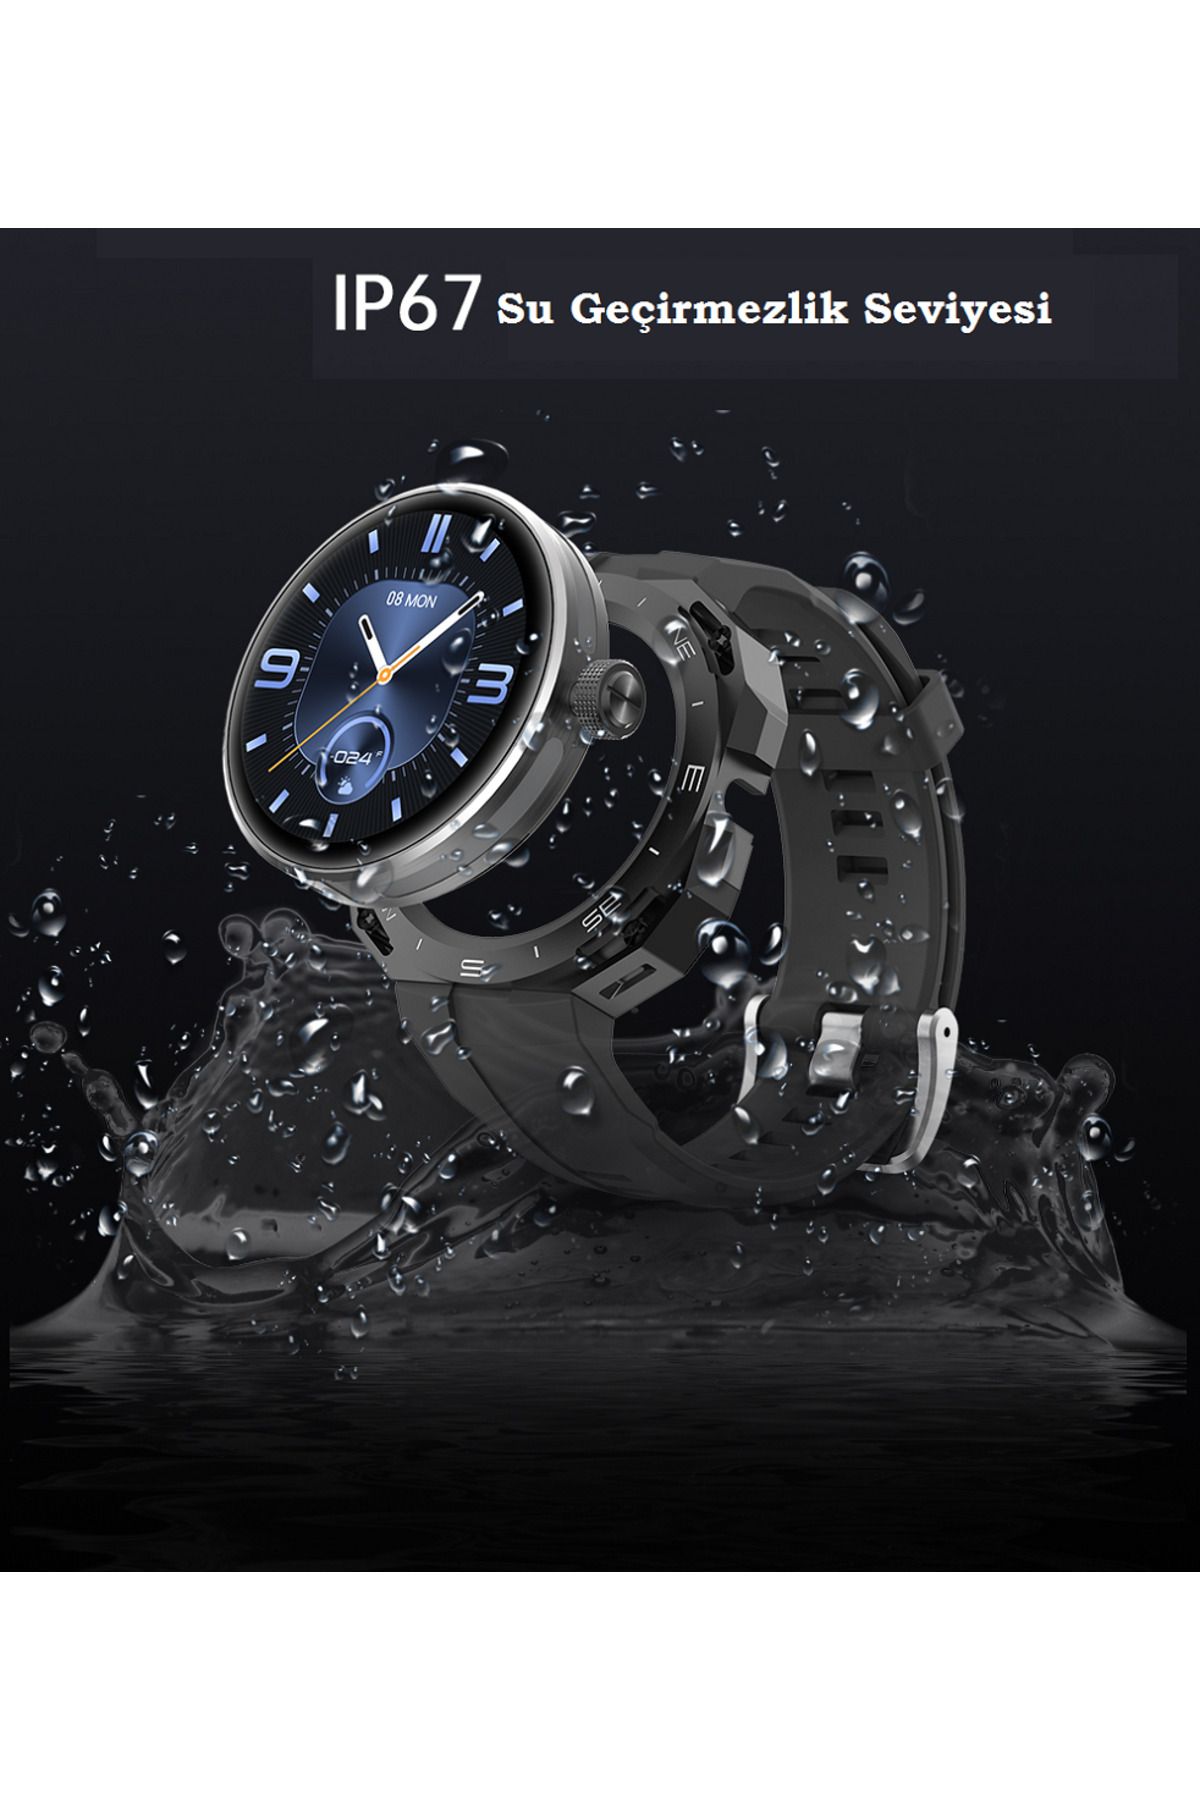 Şıktek Grade Smart G3 Akıllı Saat Sporcu Izci Dağcı Askeri Outdoor Akıllı Saat